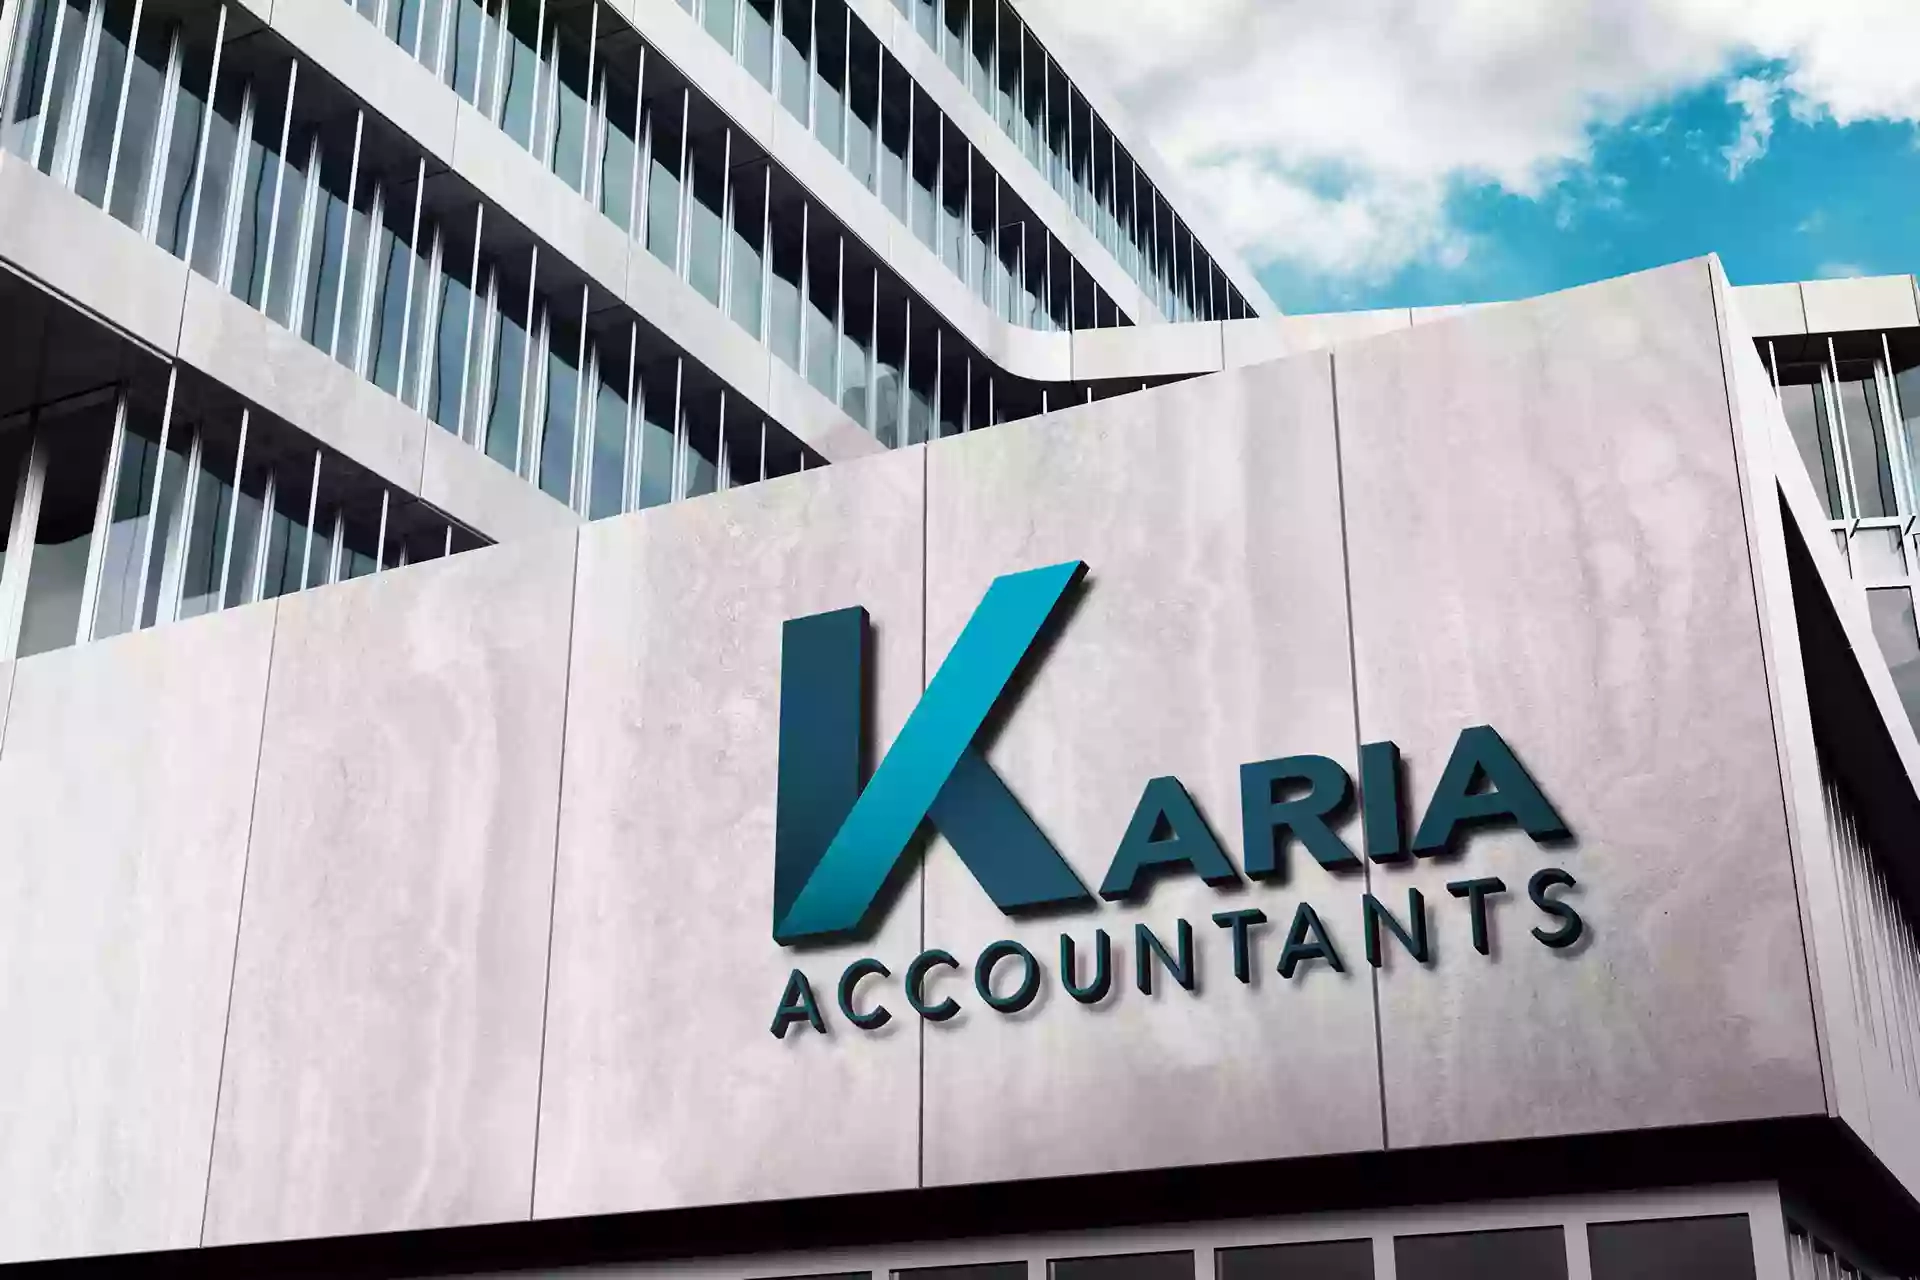 Karia Accountants